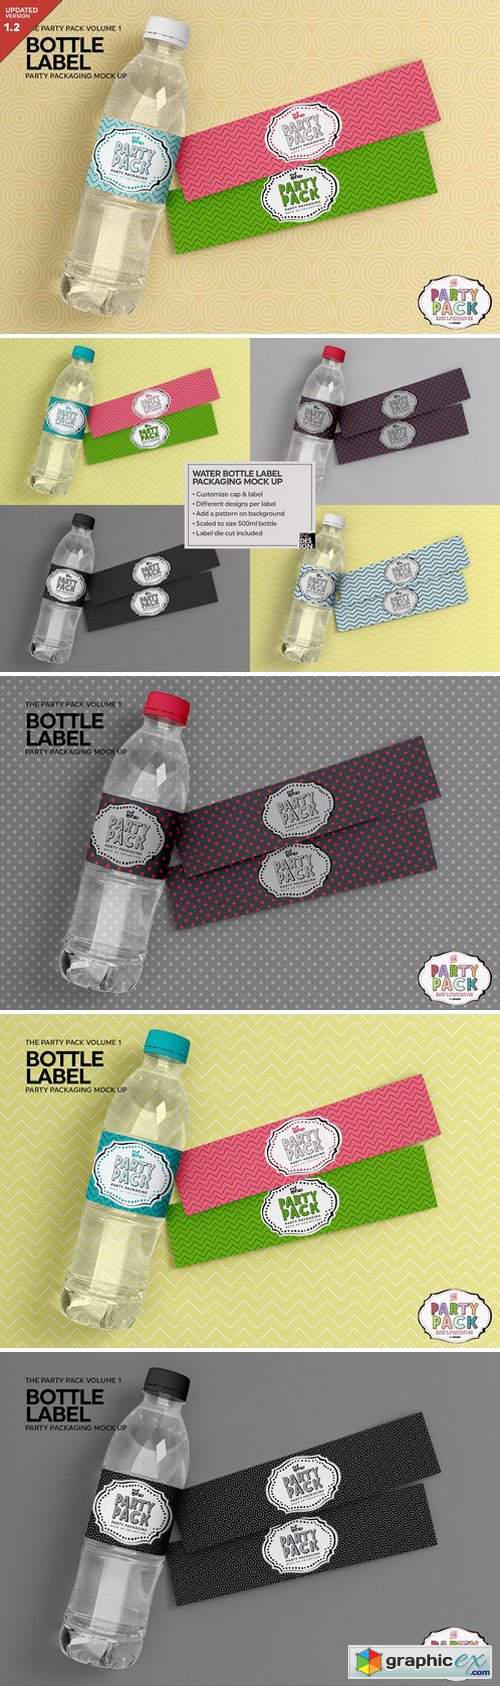 Bottle Label Packaging Mockup